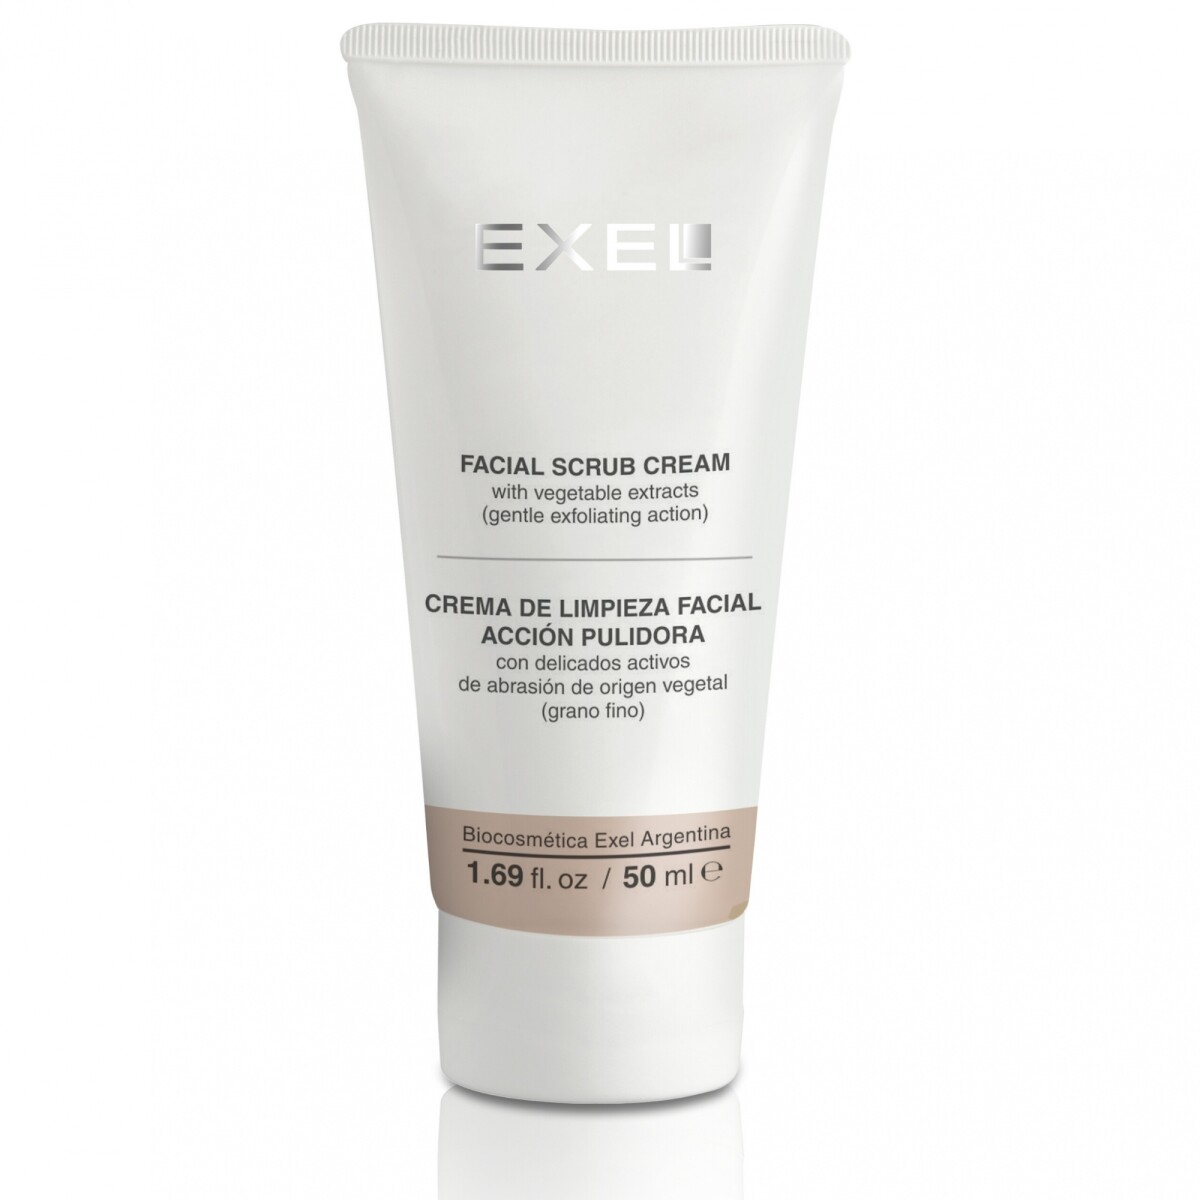 EXEL Crema de Limpieza Facial. Acción Pulidora (Grano Fino) 50 ml 